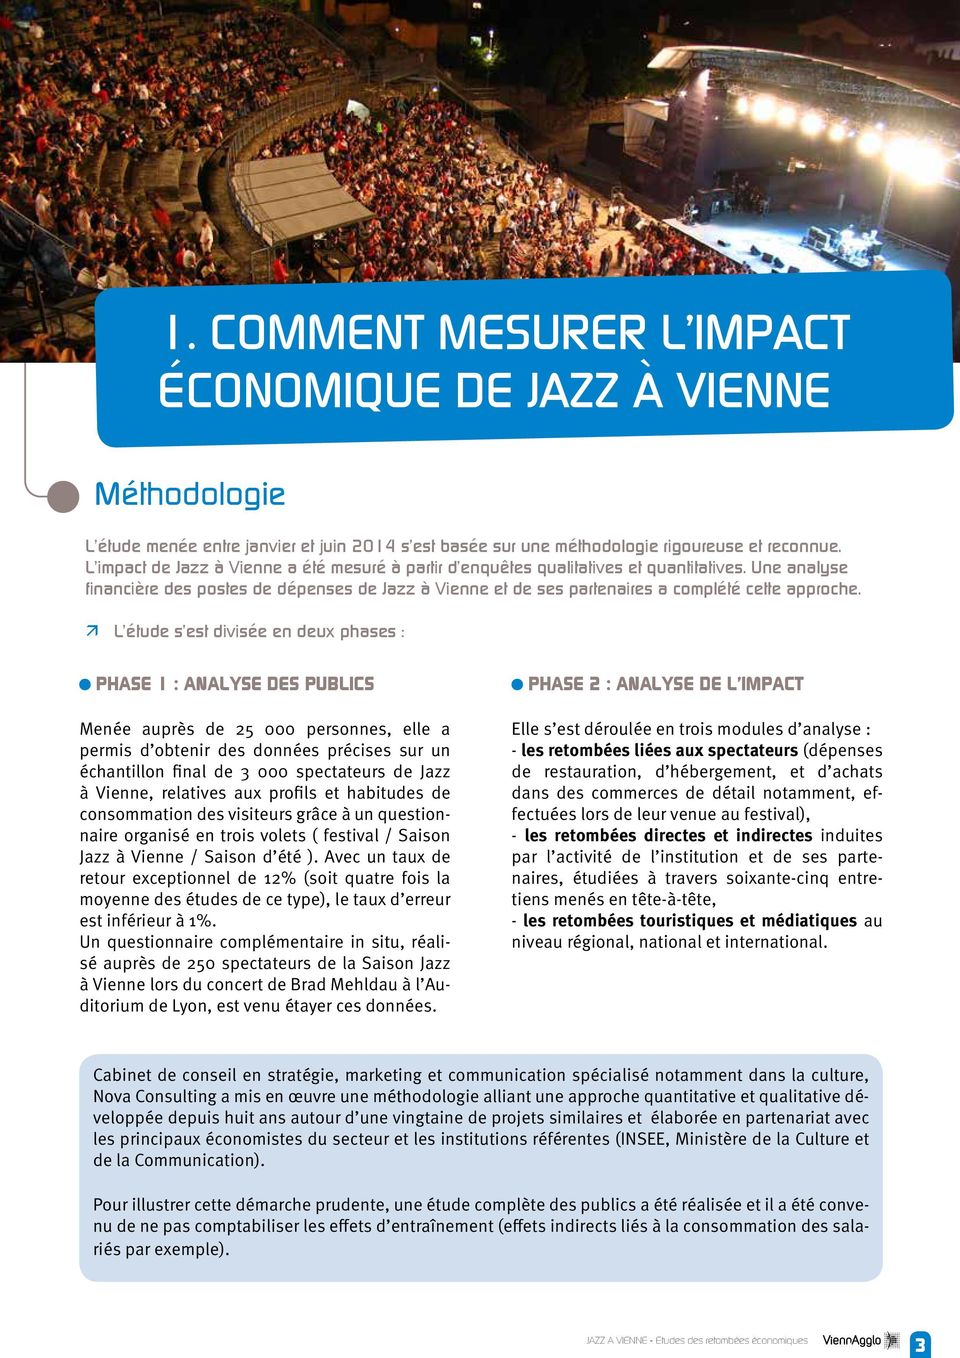 Une analyse financière des postes de dépenses de Jazz à Vienne et de ses partenaires a complété cette approche.